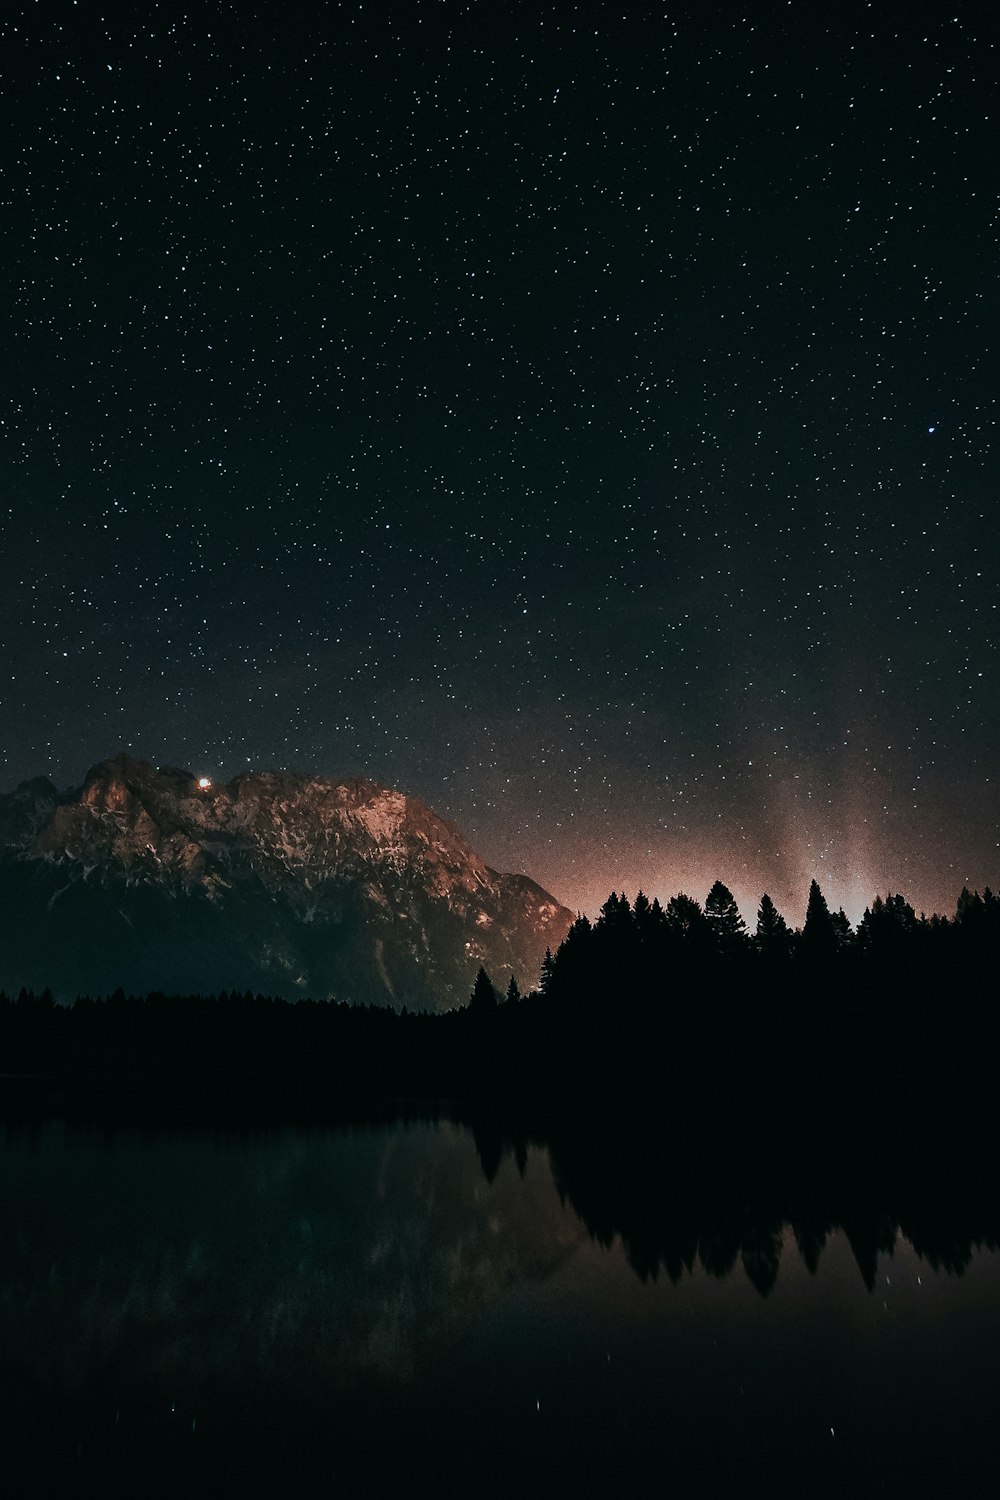 Starry night scenery photo – Free Lake antholz Image on Unsplash